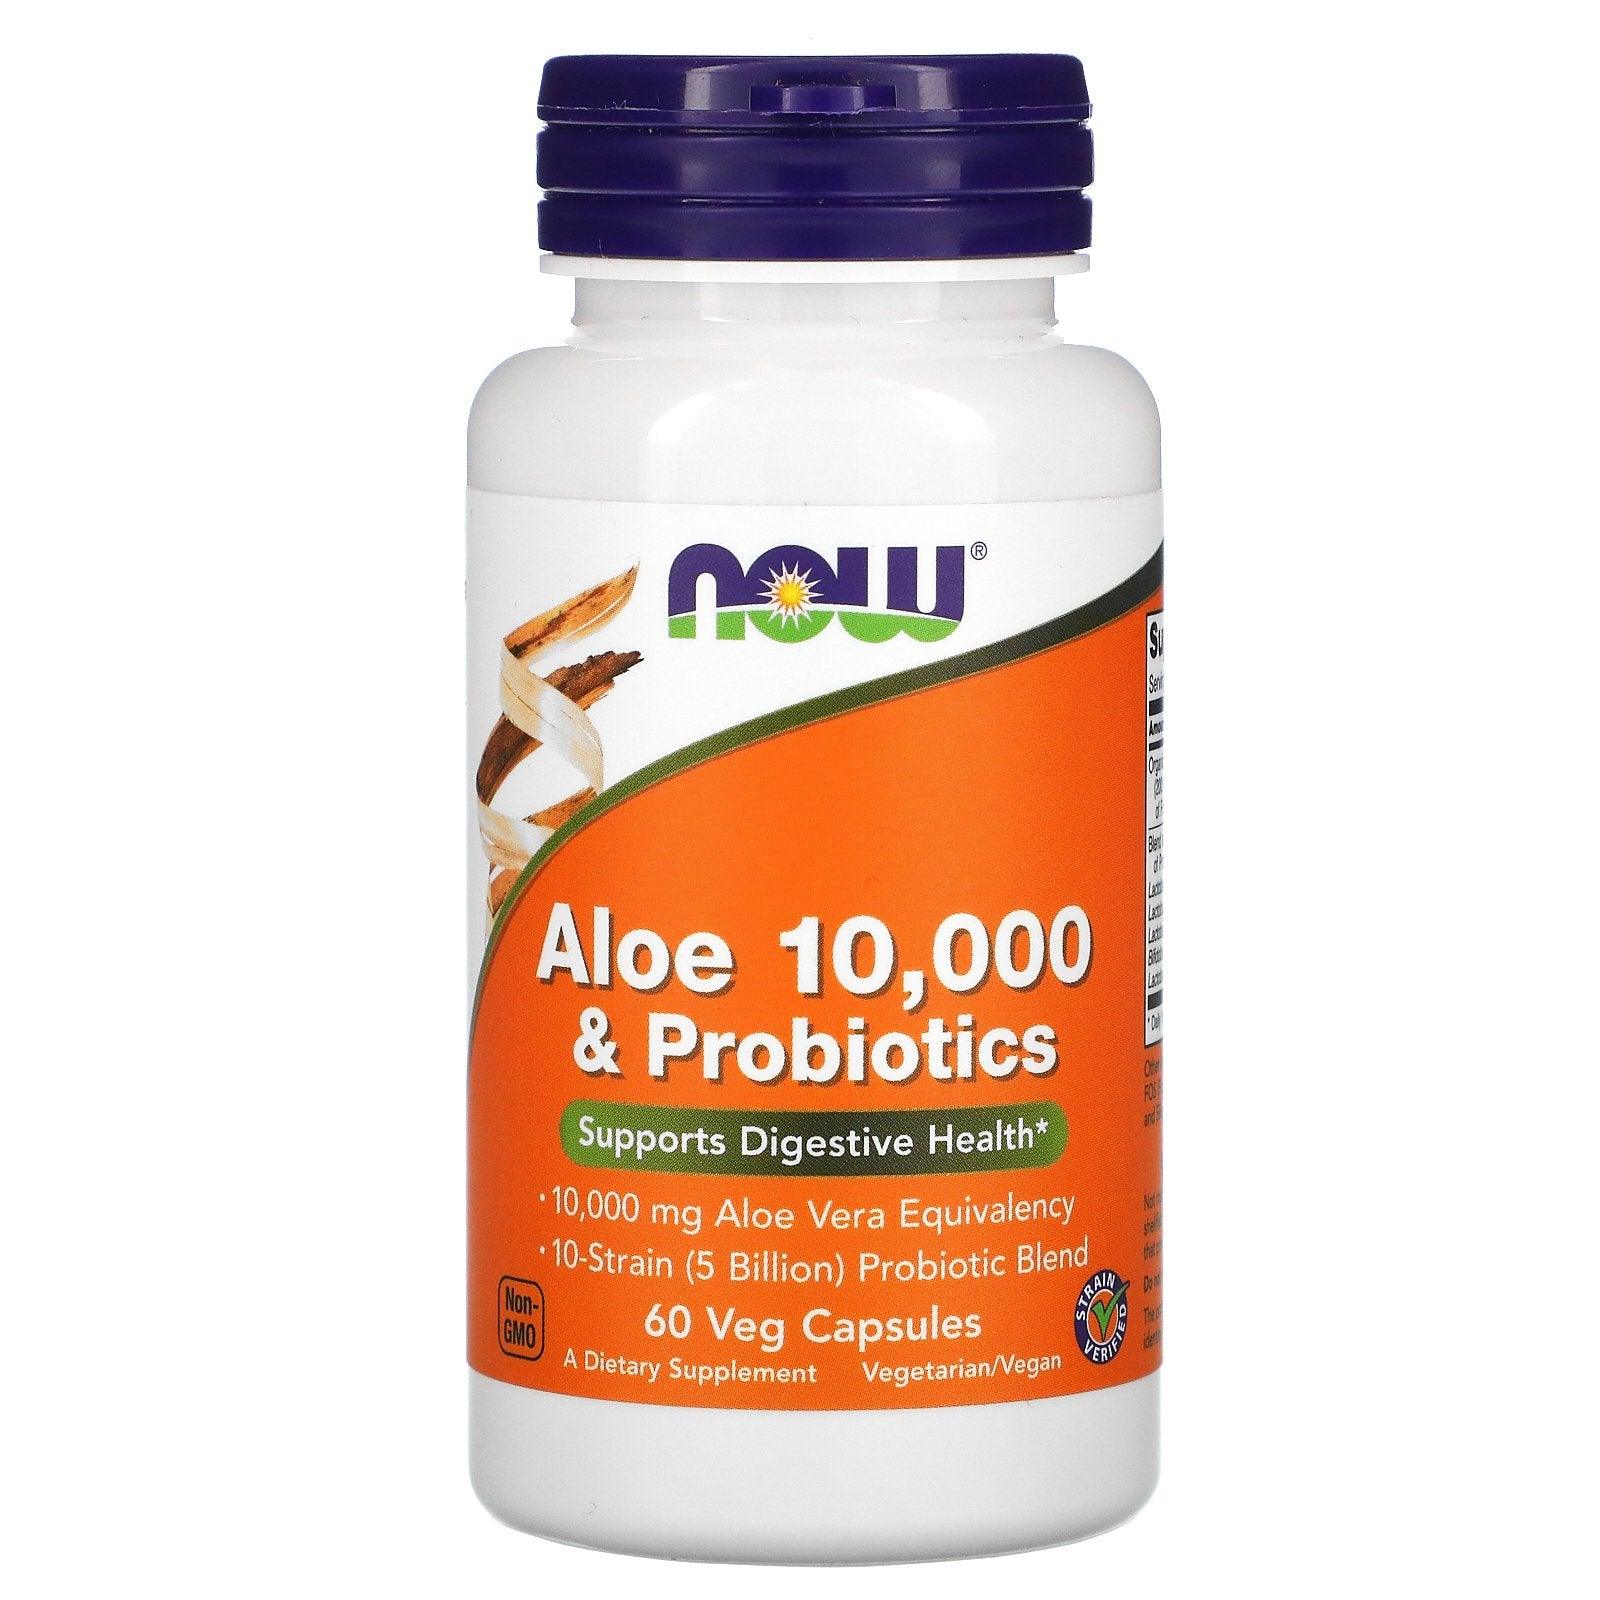 Now Aloe 10,000-and Probiotics Veg Capsules